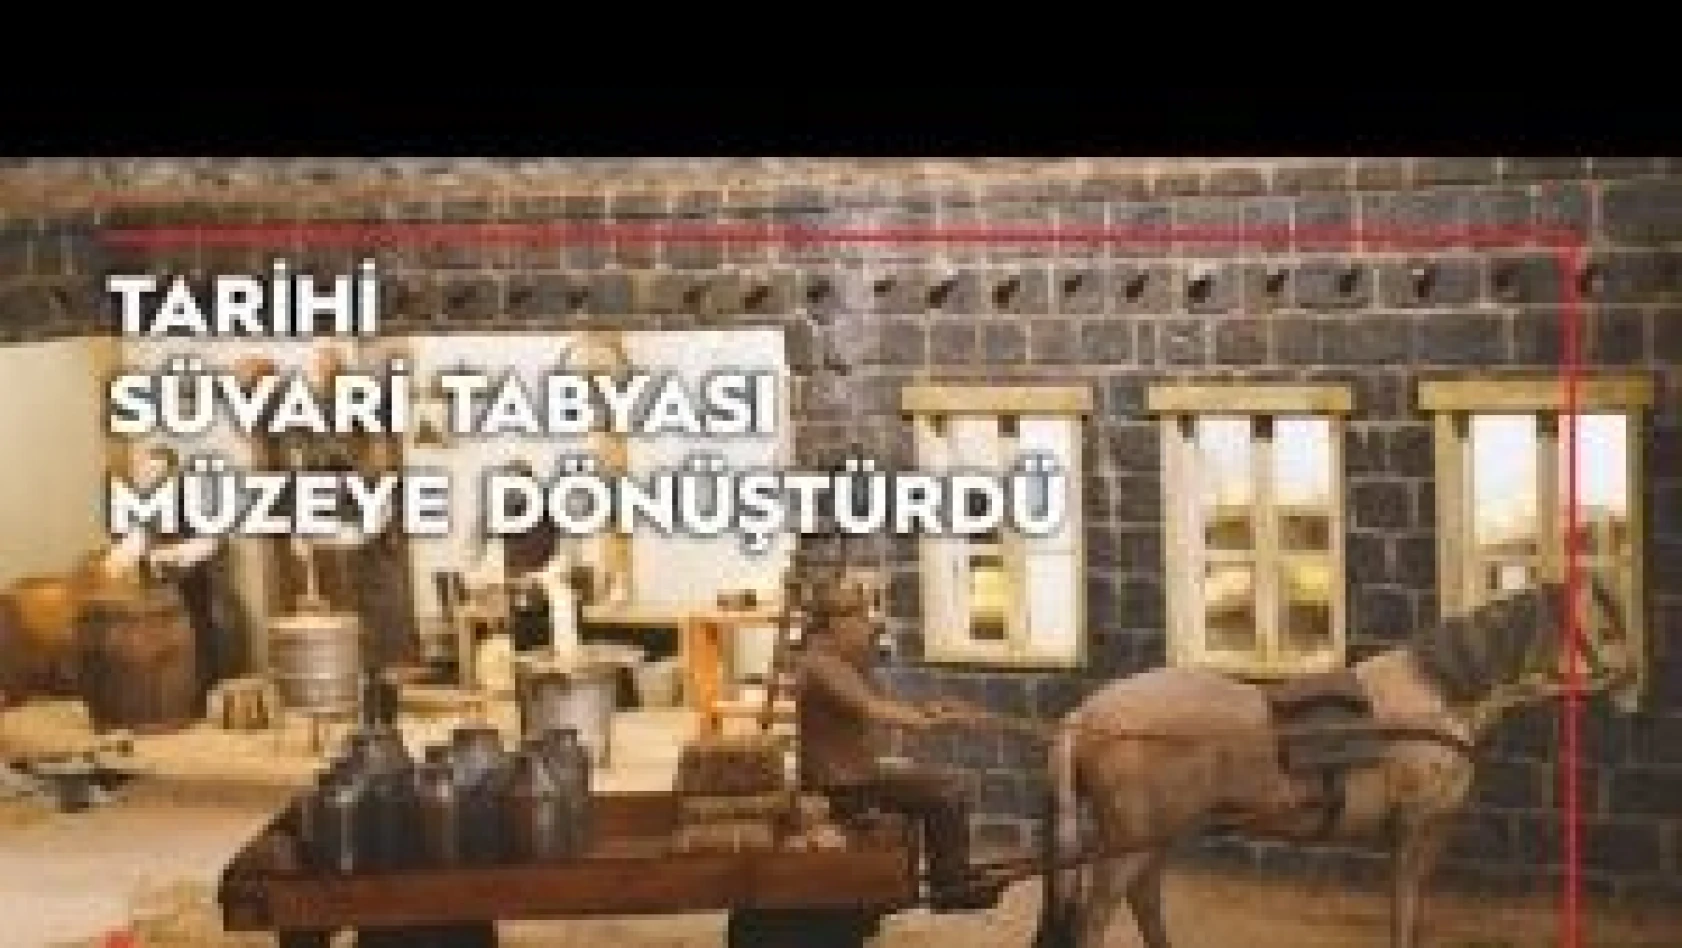 Kars'ta Tarihi Süvari Tabyası peynir müzesine dönüştürüldü